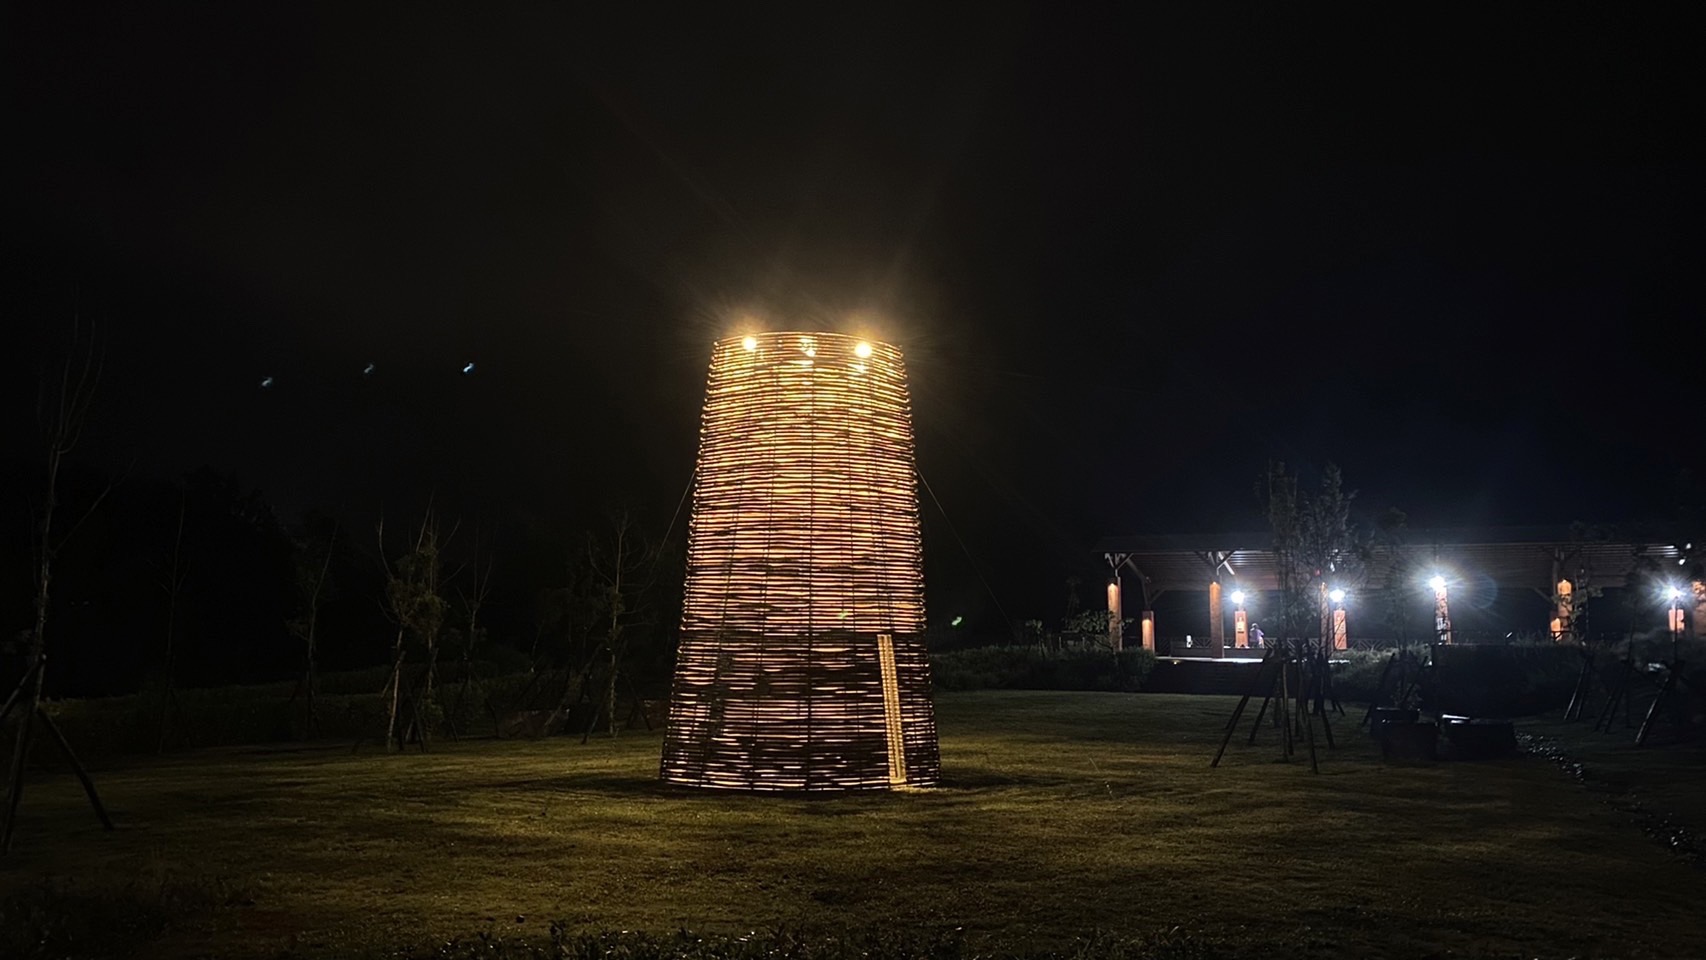 位於萬里區的大鵬足湯公園，由知名藝術團隊禹禹工作室展出〈初始〉